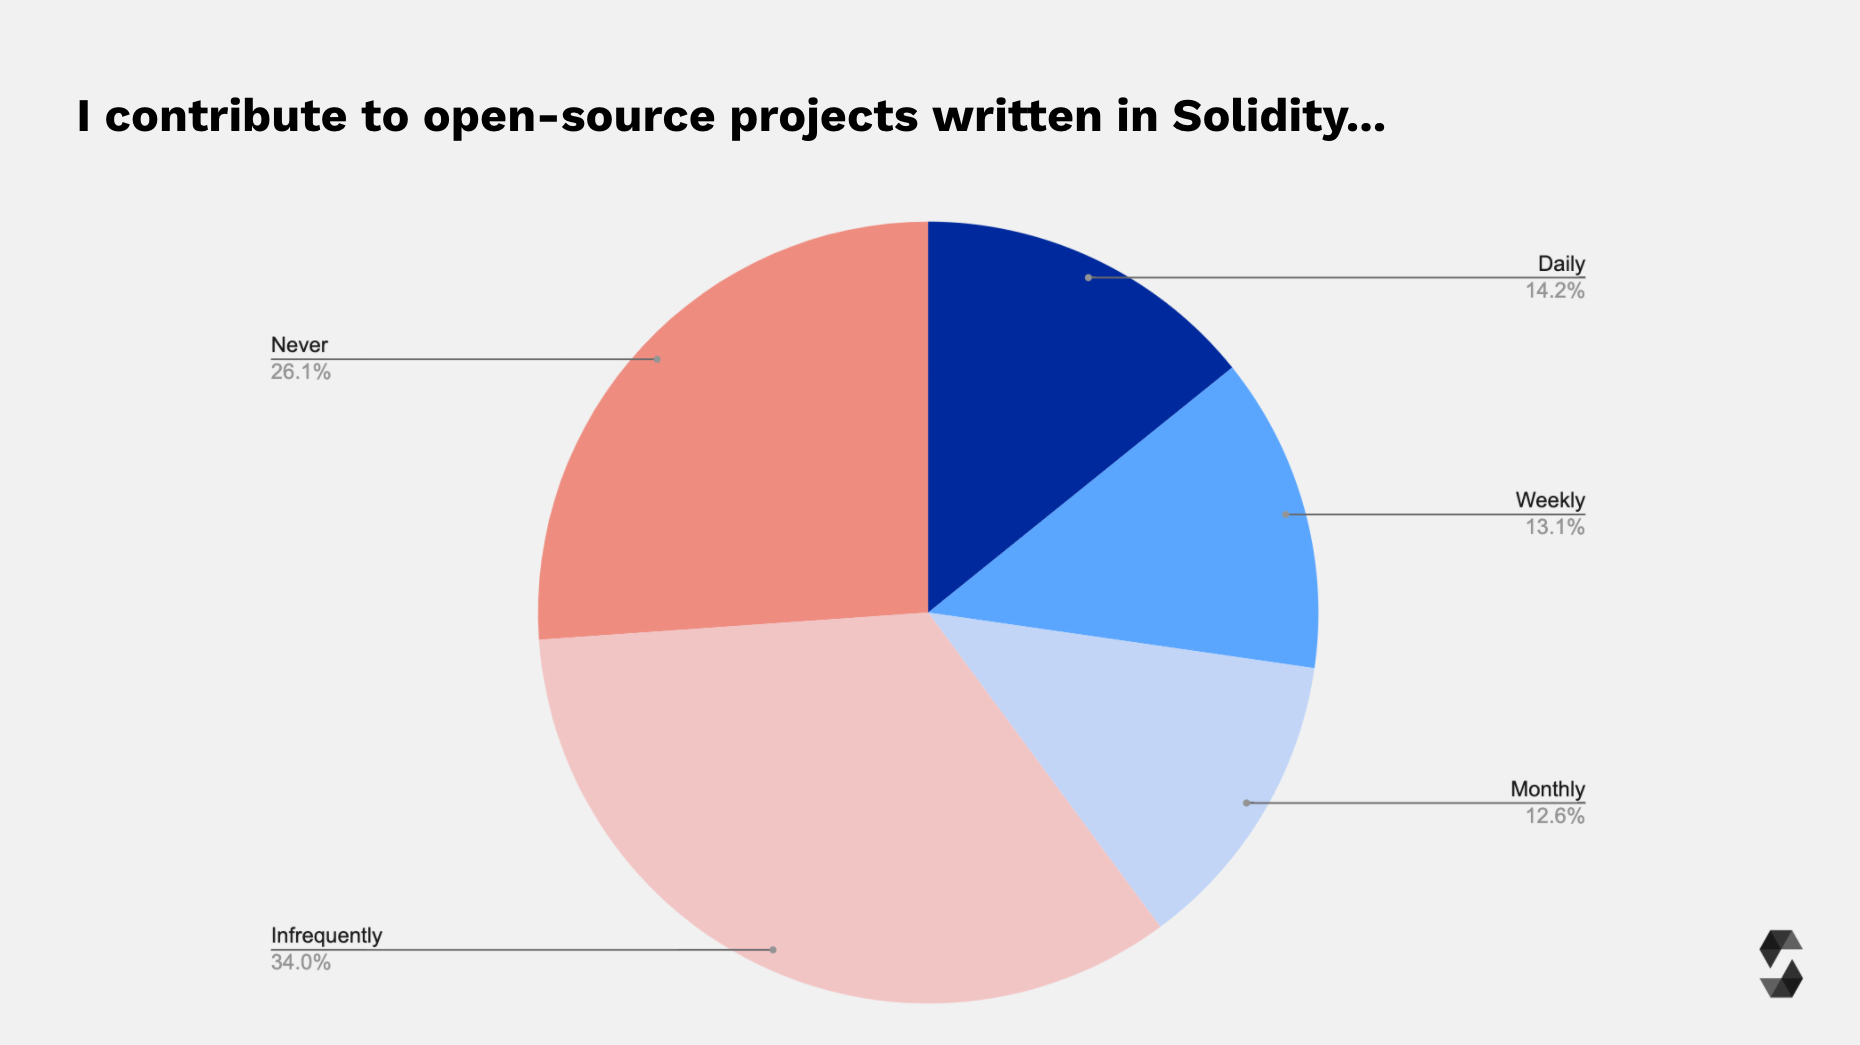 Survey Participants Open Source Contributions